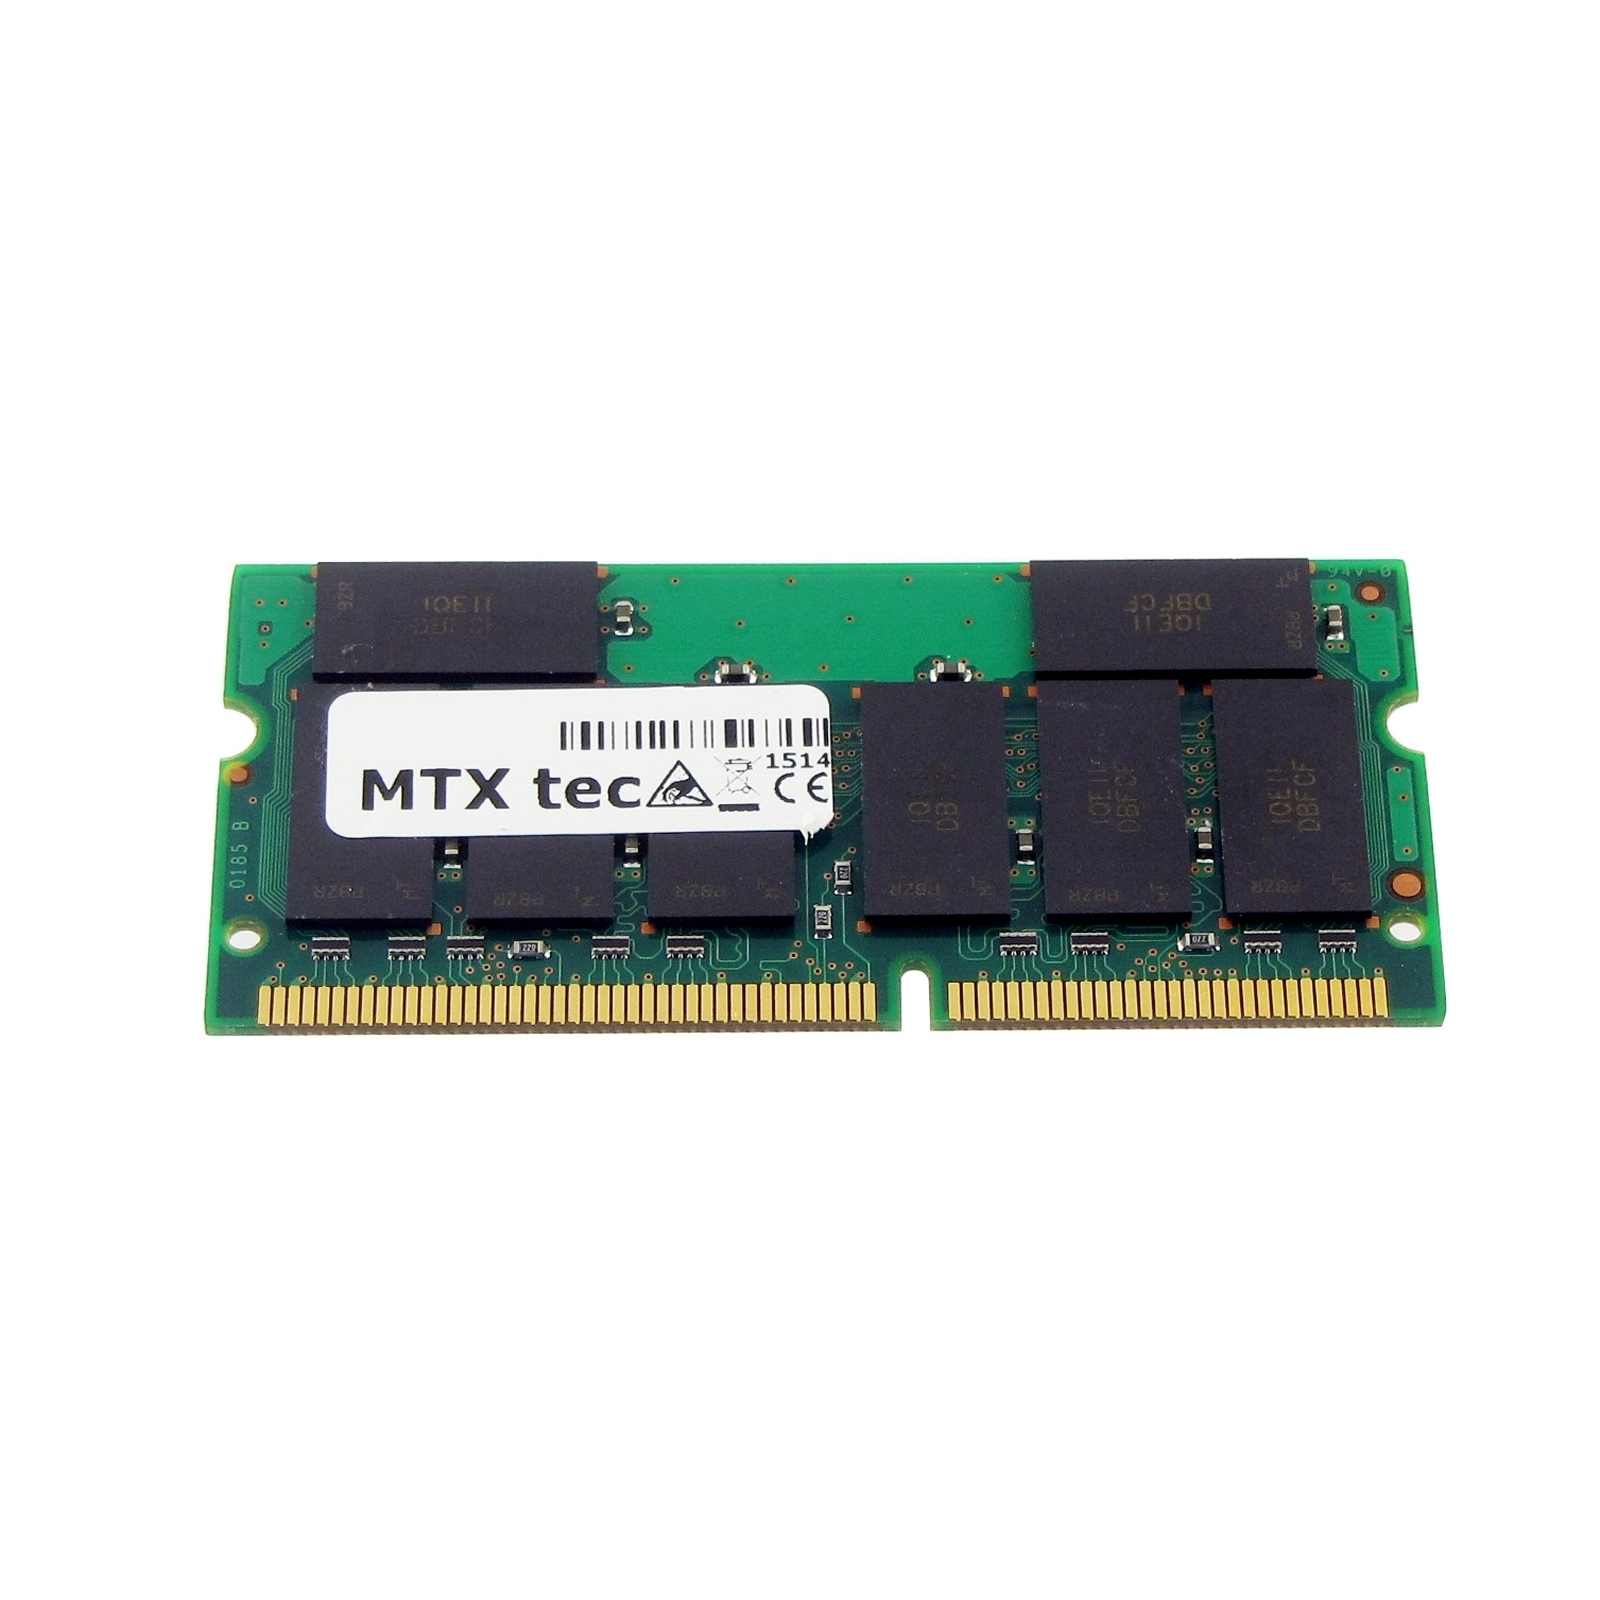 MTXTEC Arbeitsspeicher 512 Notebook-Speicher für MB TravelMate MB 260 RAM 512 SDRAM